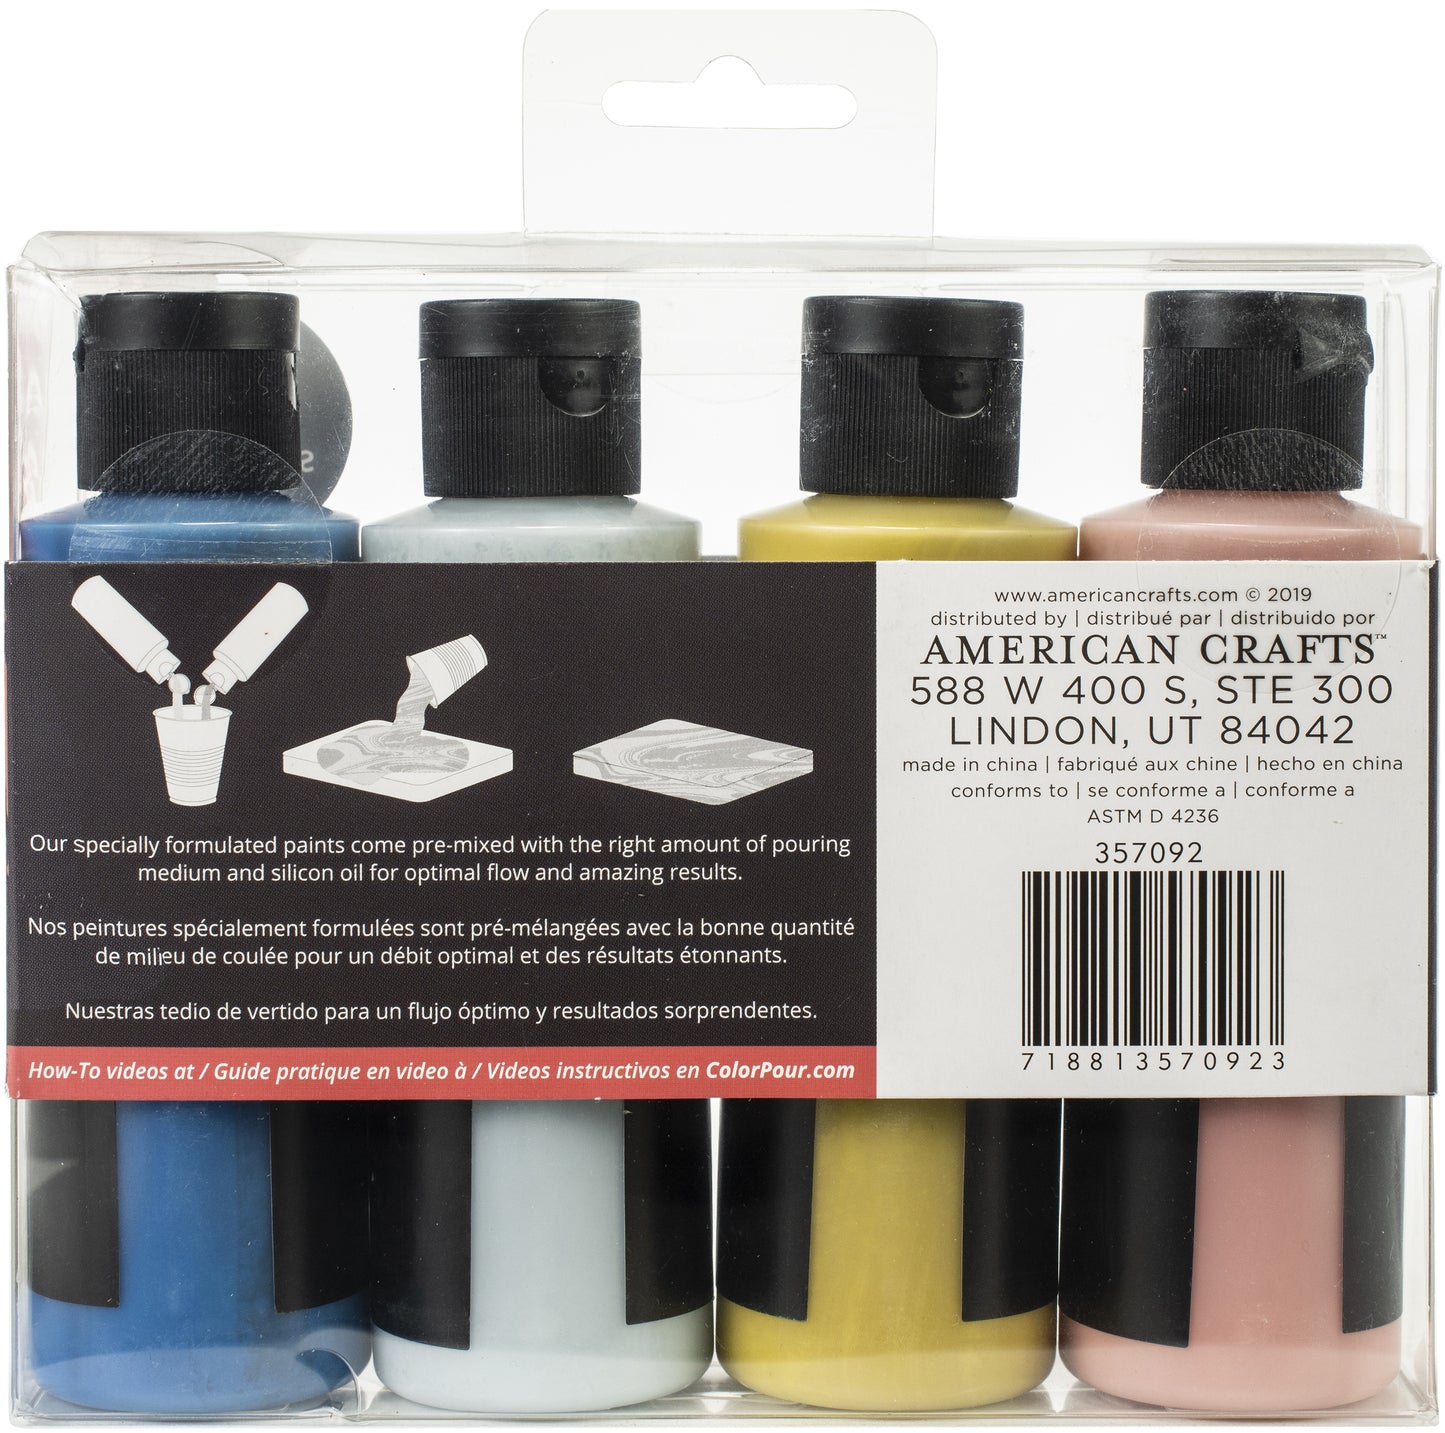 American Crafts Color Pour Magic Pre-Mixed Paint Kit 4/Pkg-Nostalgia